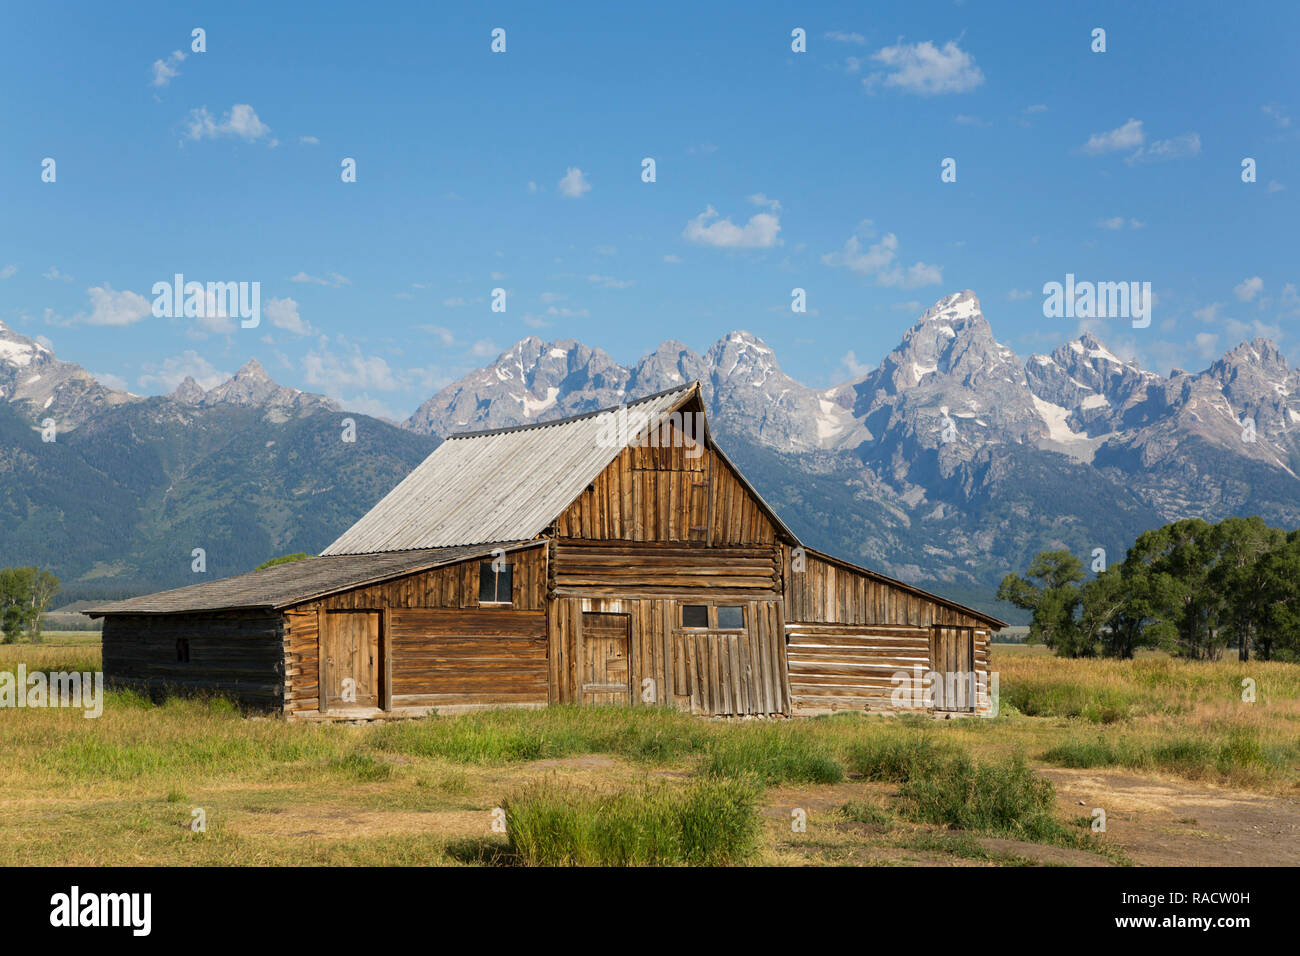 T. A. Moulton Barn, Mormon Row, Parc National de Grand Teton, Wyoming, États-Unis d'Amérique, Amérique du Nord Banque D'Images